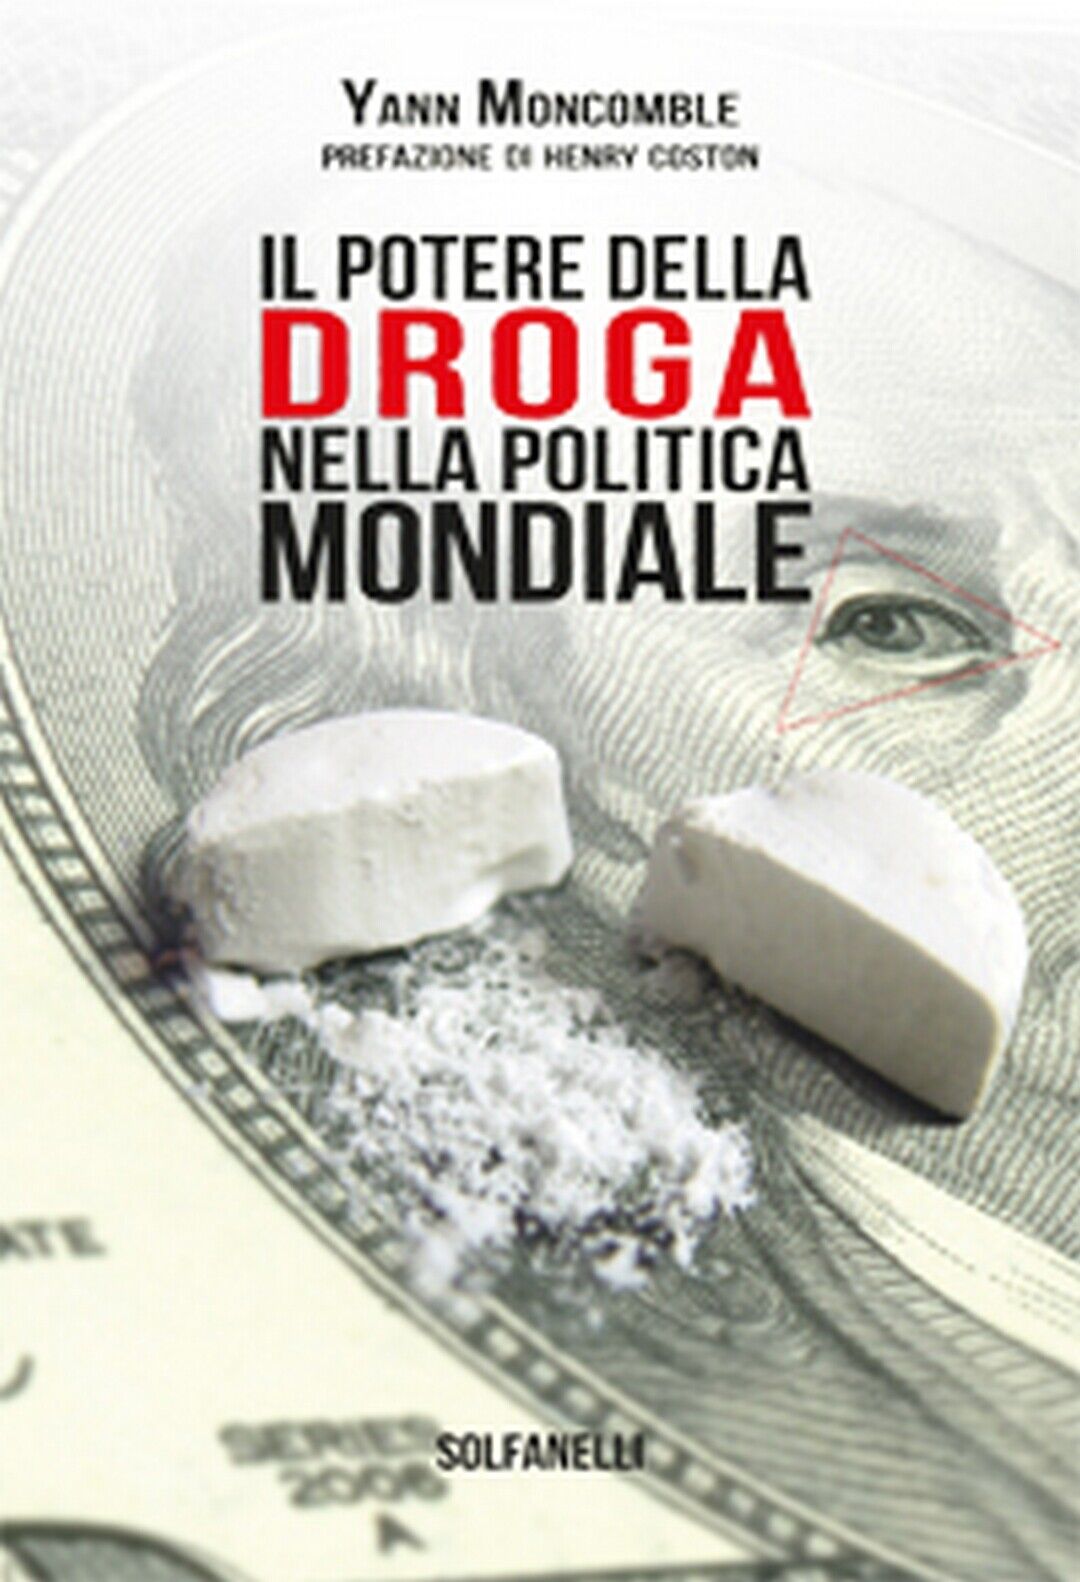 IL POTERE DELLA DROGA NELLA POLITICA MONDIALE  di Yann Moncomble,  Solfanelli libro usato